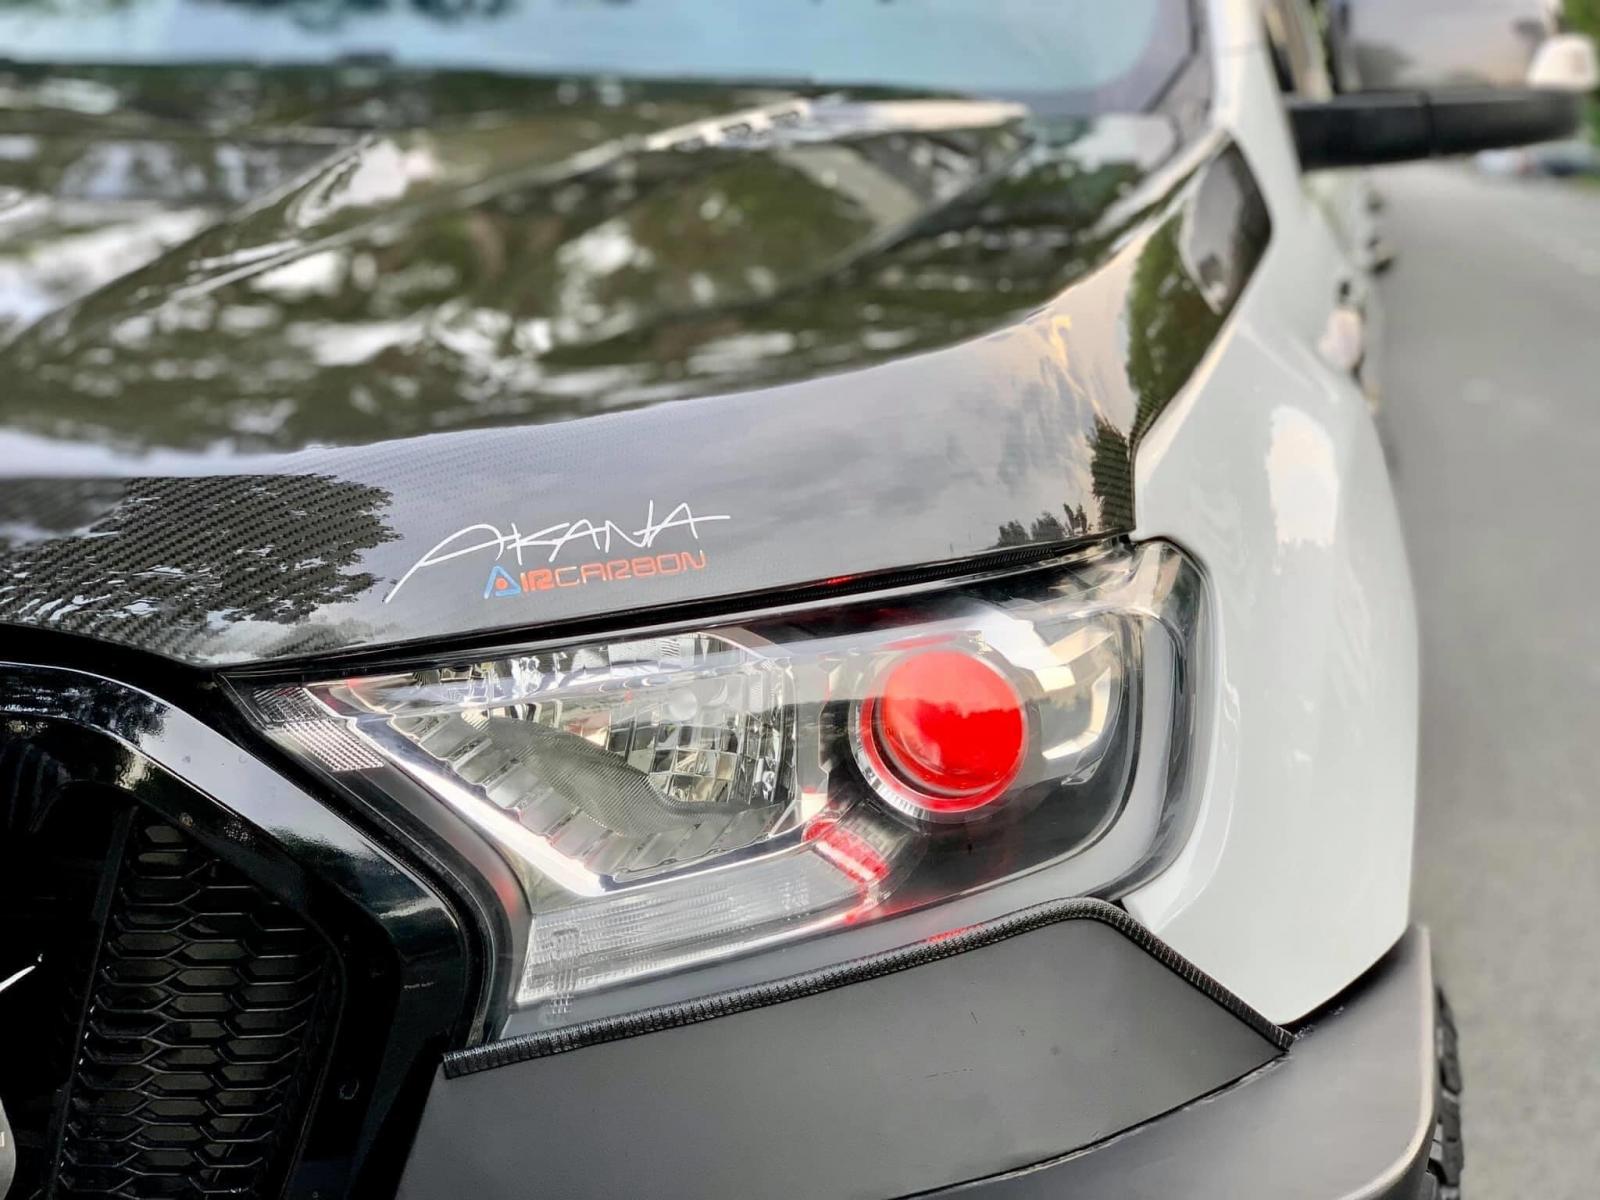 Cụm Đèn chiếu sáng sử dụng loại bi – xenon, đèn LED chạy ban ngày lấy cảm hứng từ người anh em Ford Mustang 2018.